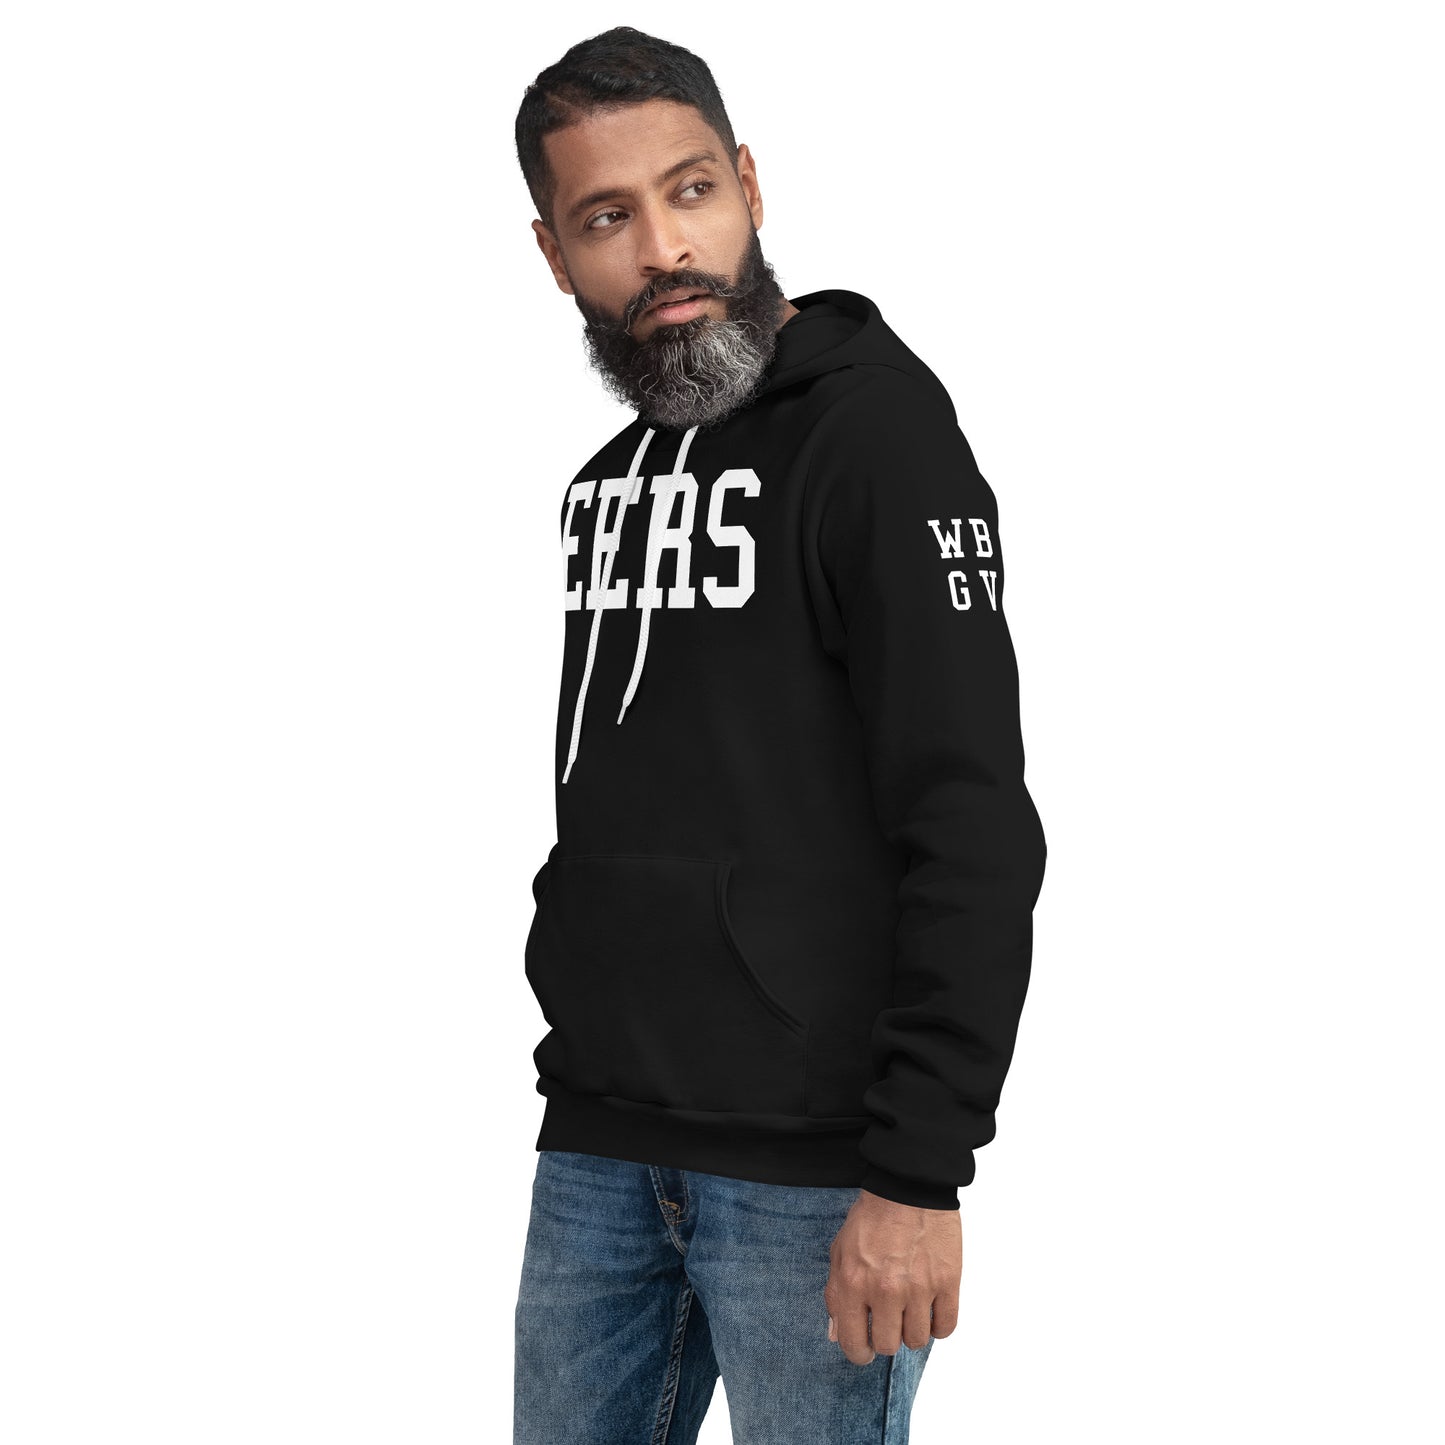 EERS_WBGV(sleeve)-Unisex hoodie